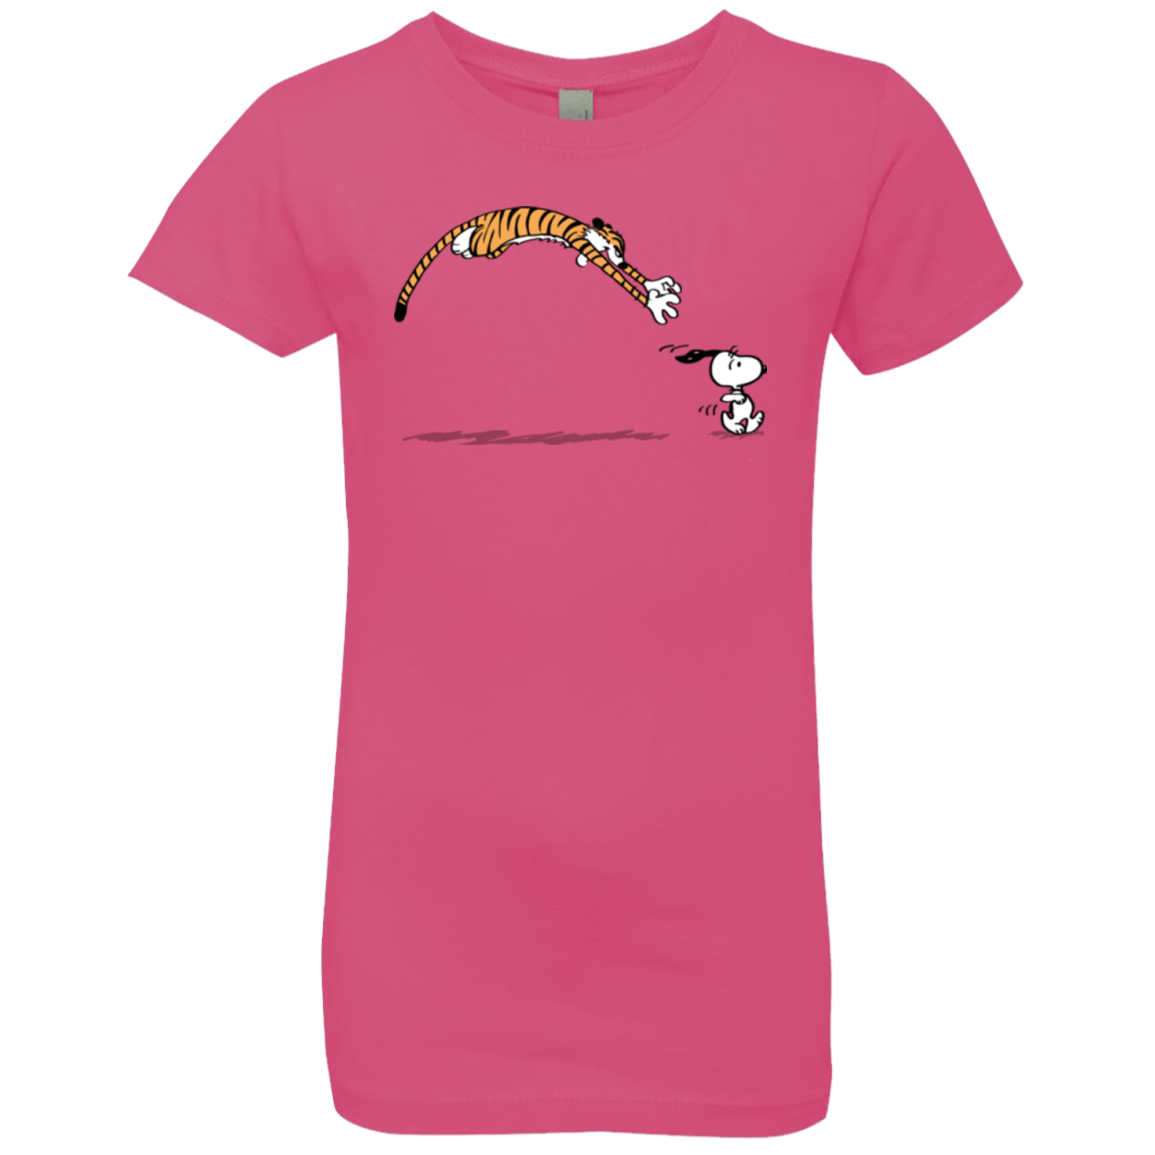 T-Shirts Hot Pink / YXS Pounce Girls Premium T-Shirt